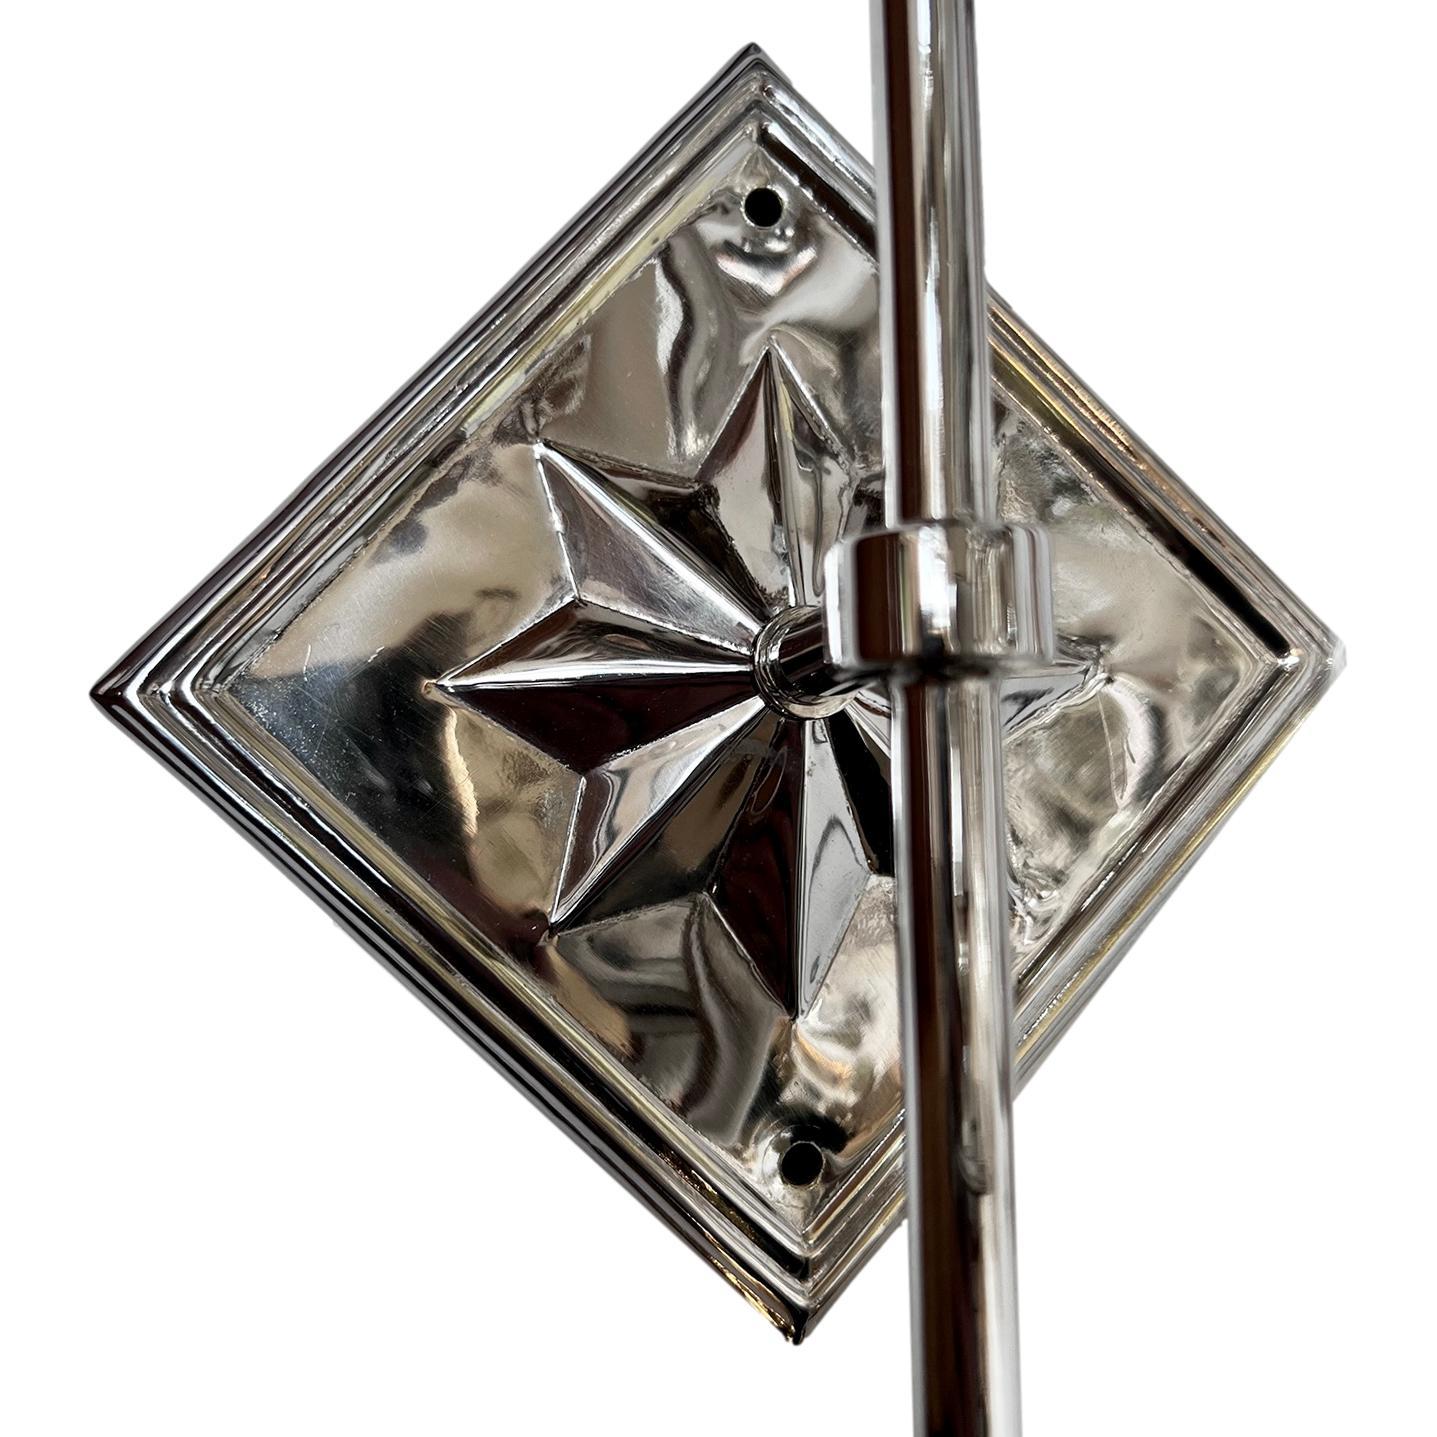 Ensemble de quatre appliques à une lumière, datant des années 1930, en métal argenté, avec étoile sur la plaque arrière. Vendu par paire.

Mesures :
Hauteur : 12